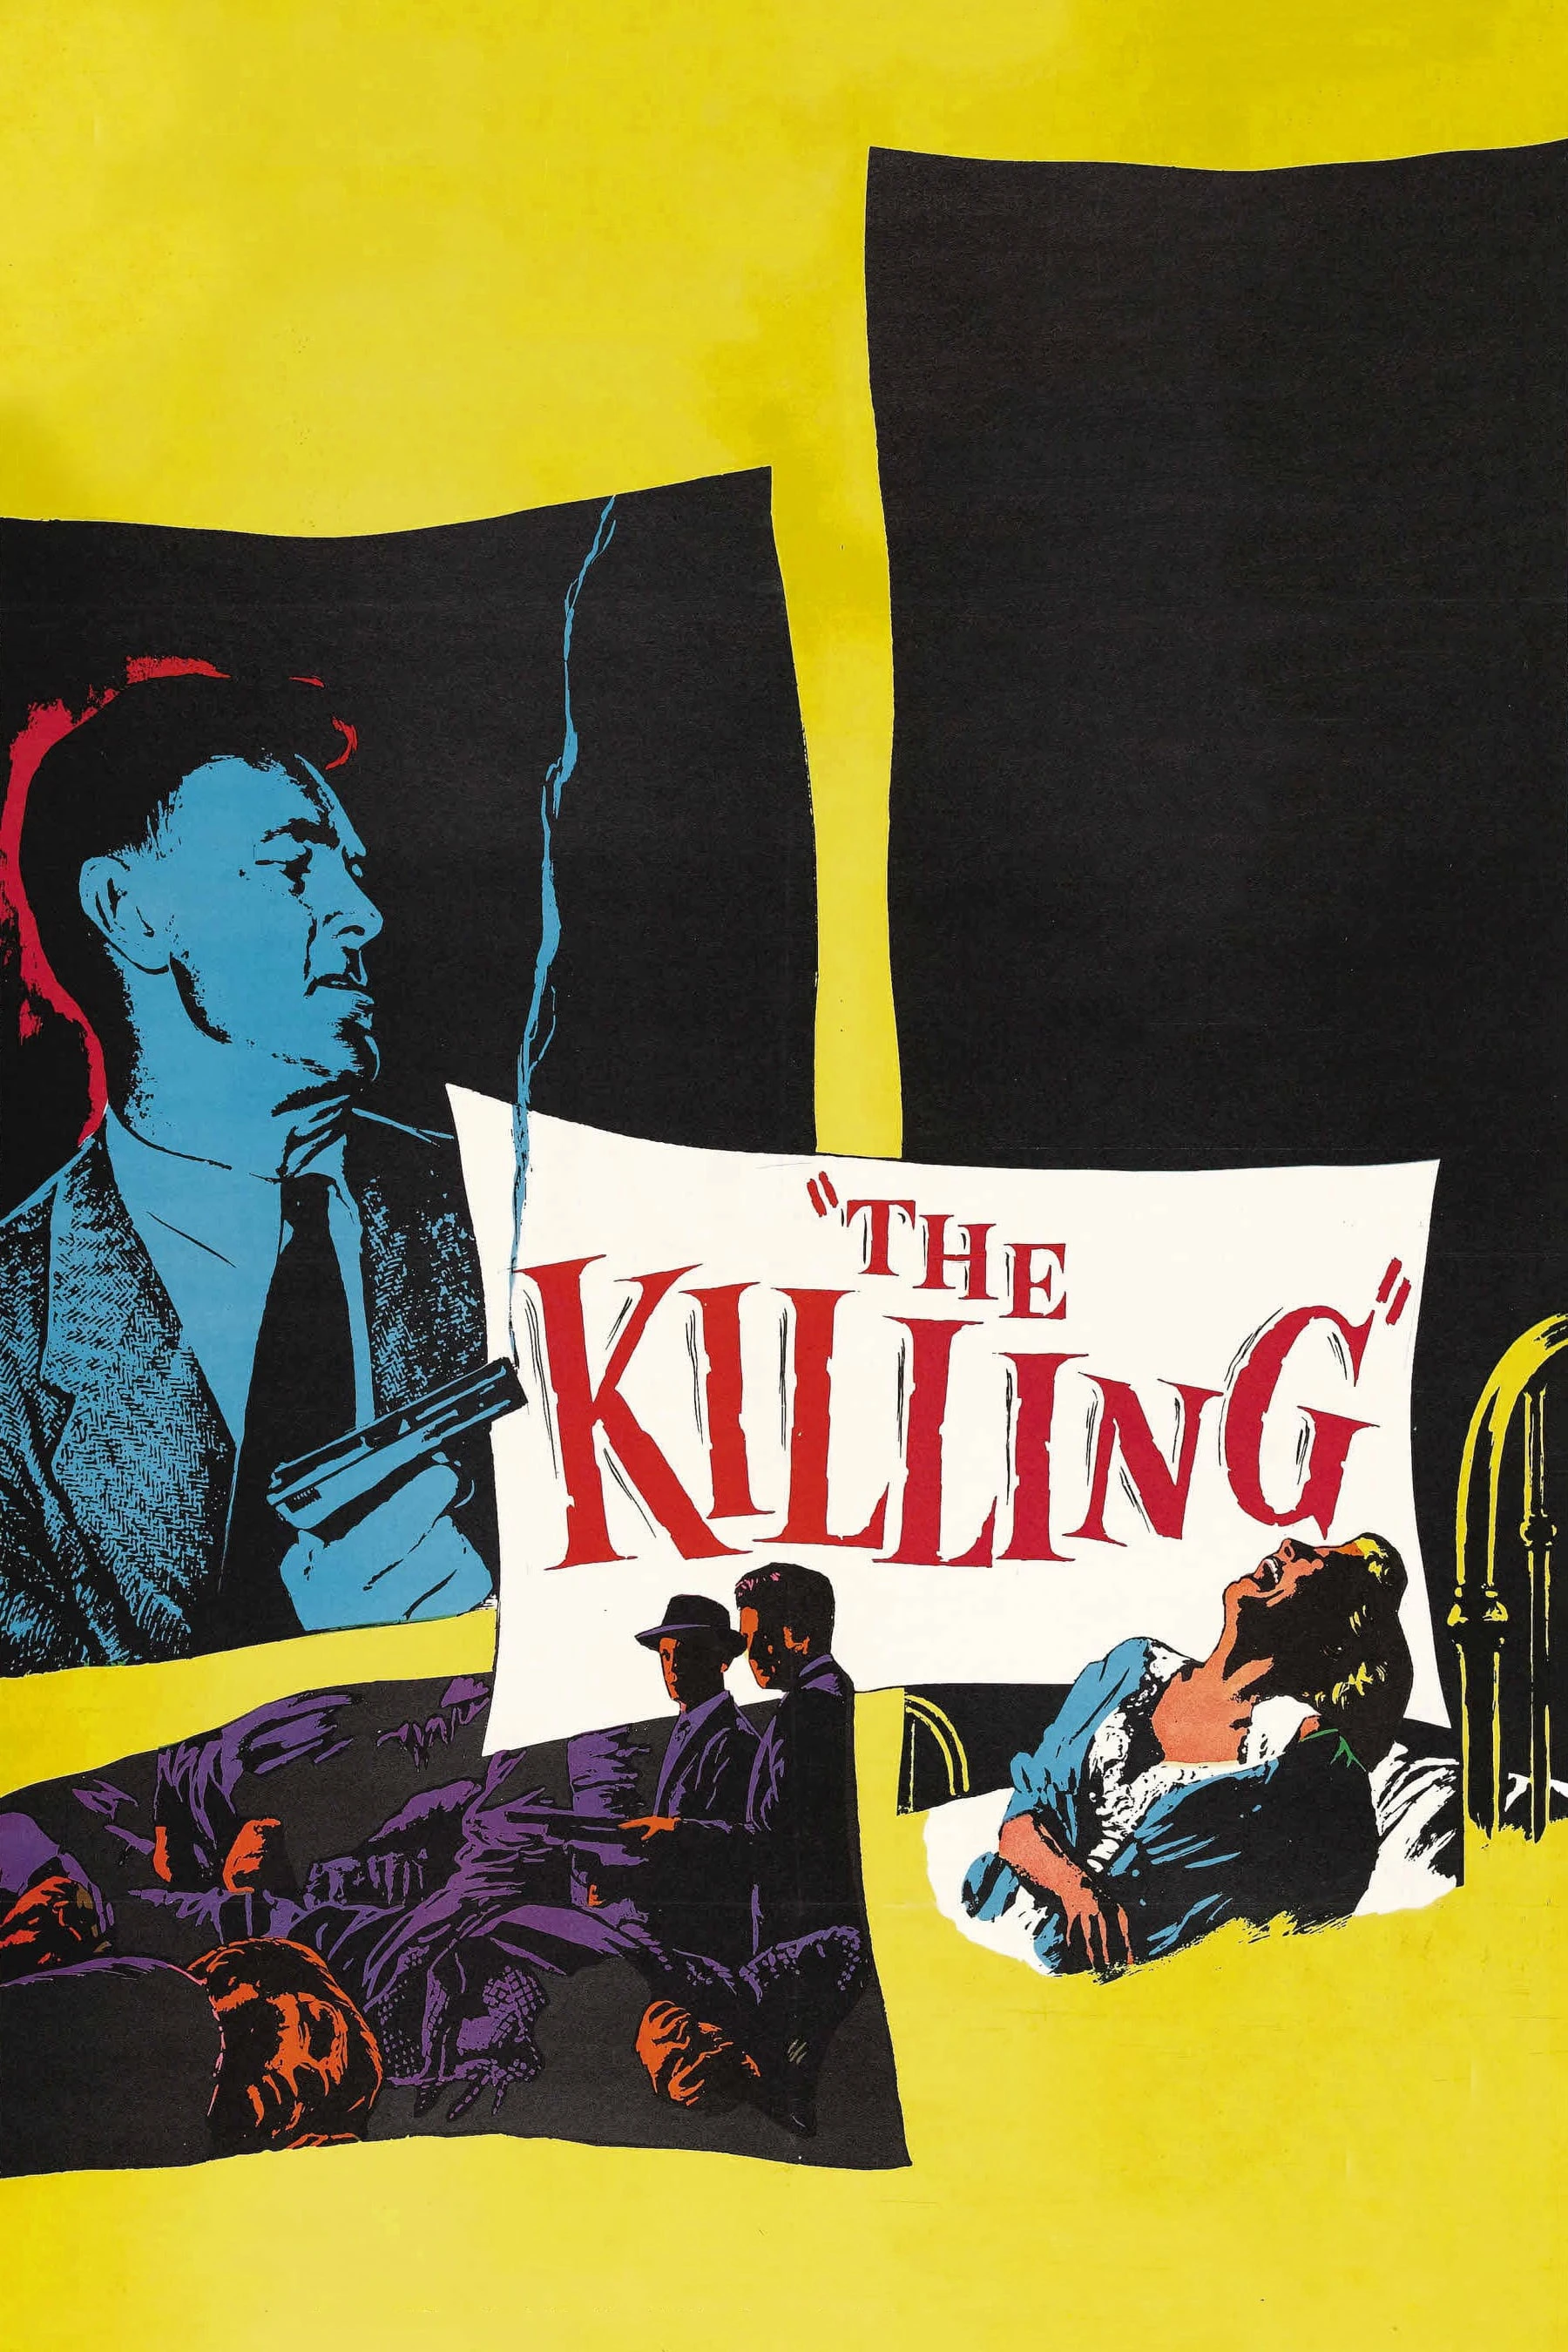 The Killing | The Killing (1956)